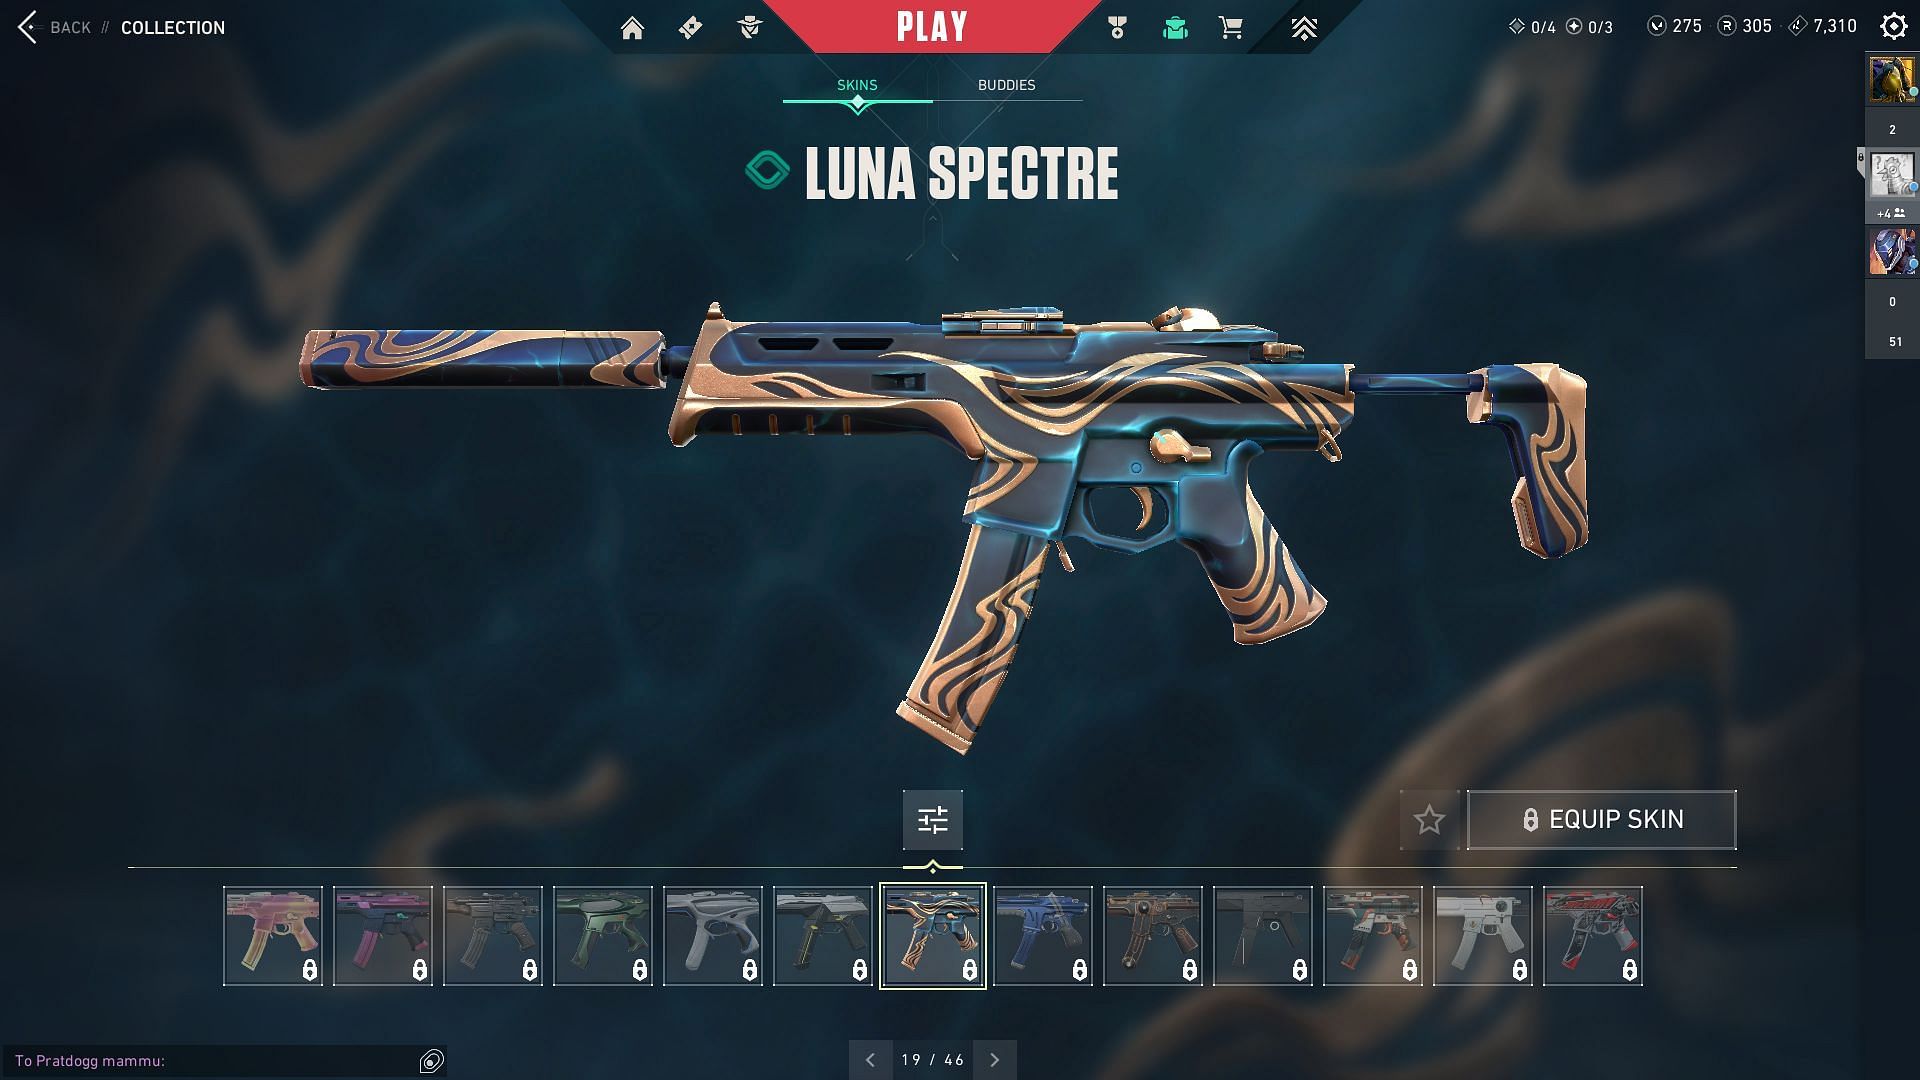 Luna Spectre (Image via Sportskeeda and Riot Games)